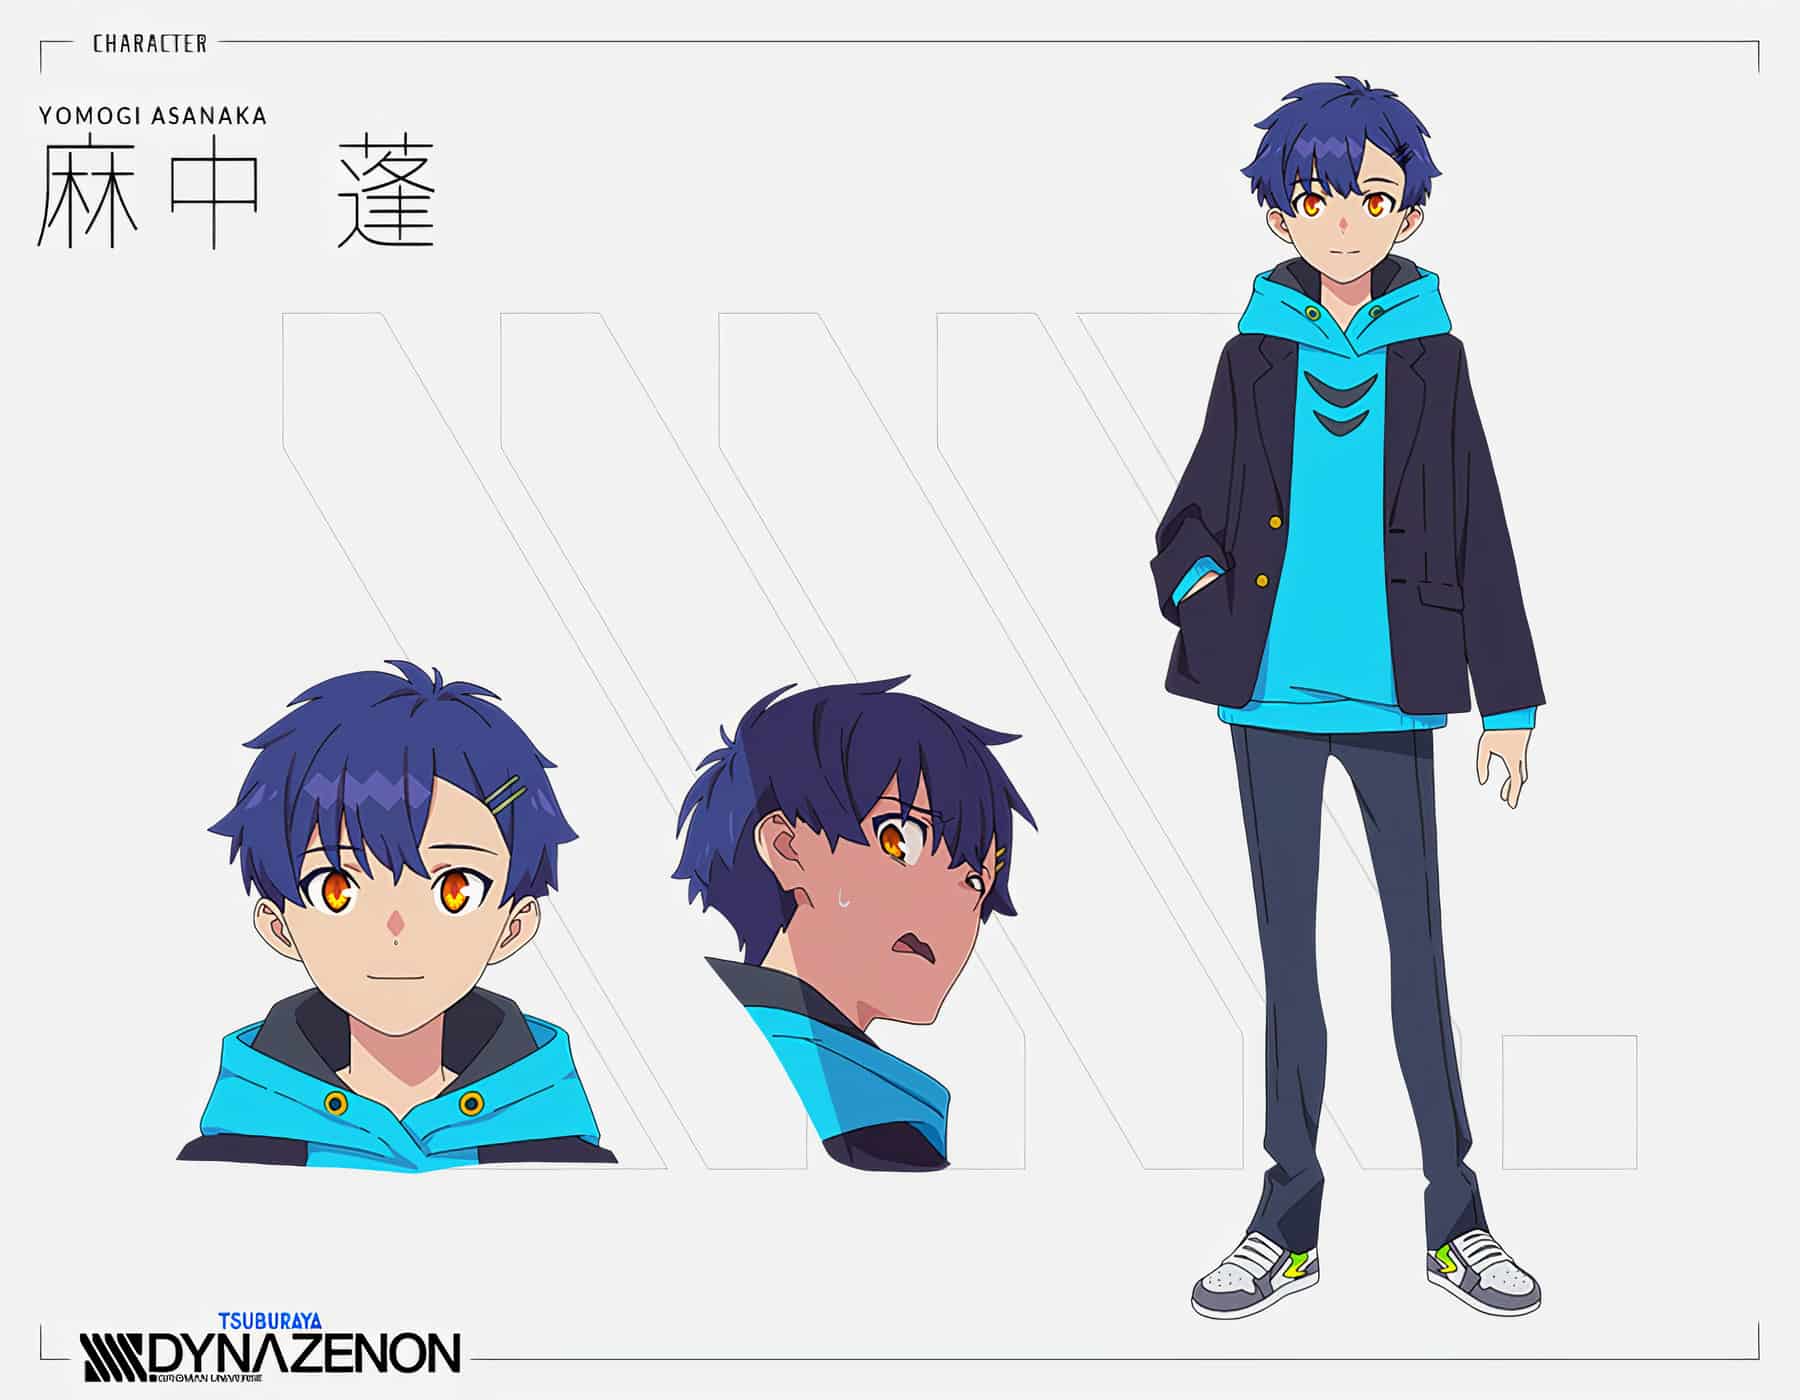 Chara Design de Yomogi Asanaka, l'un des personnages principaux de l'anime SSSS.DYNAZENON